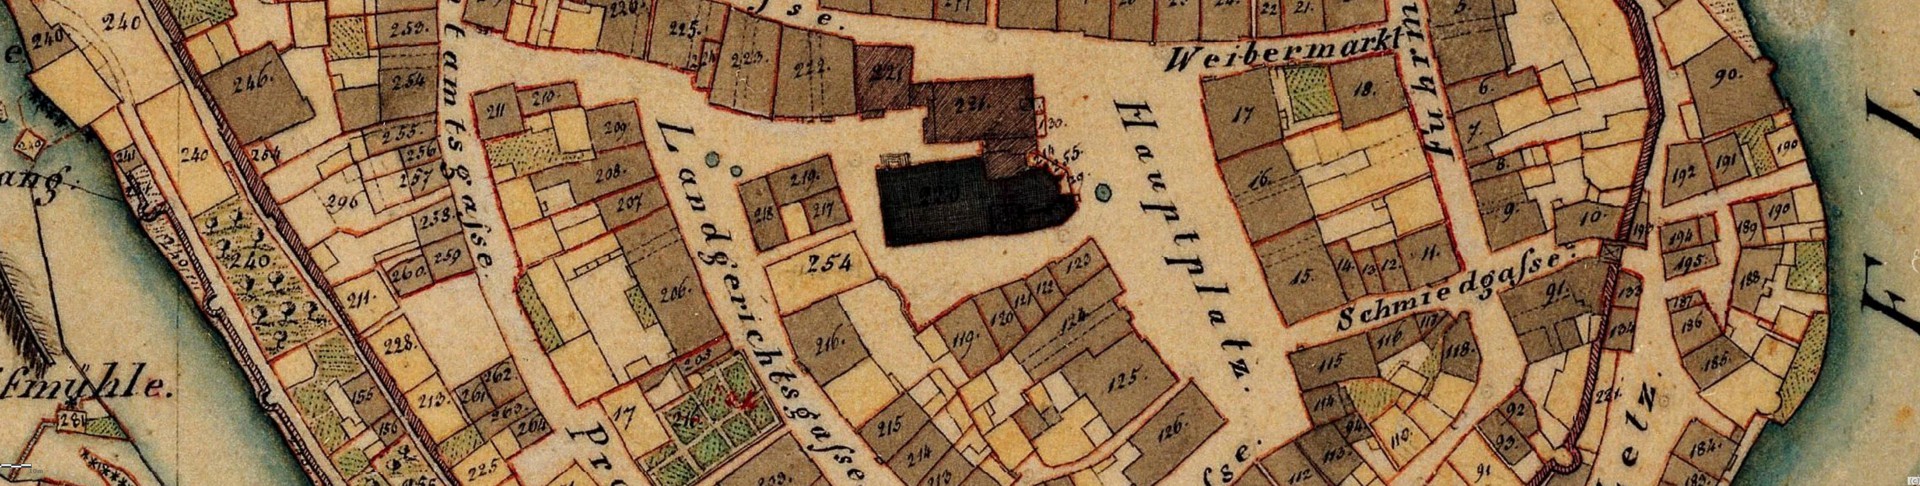 Historische Karte von der Chamer Innenstadt